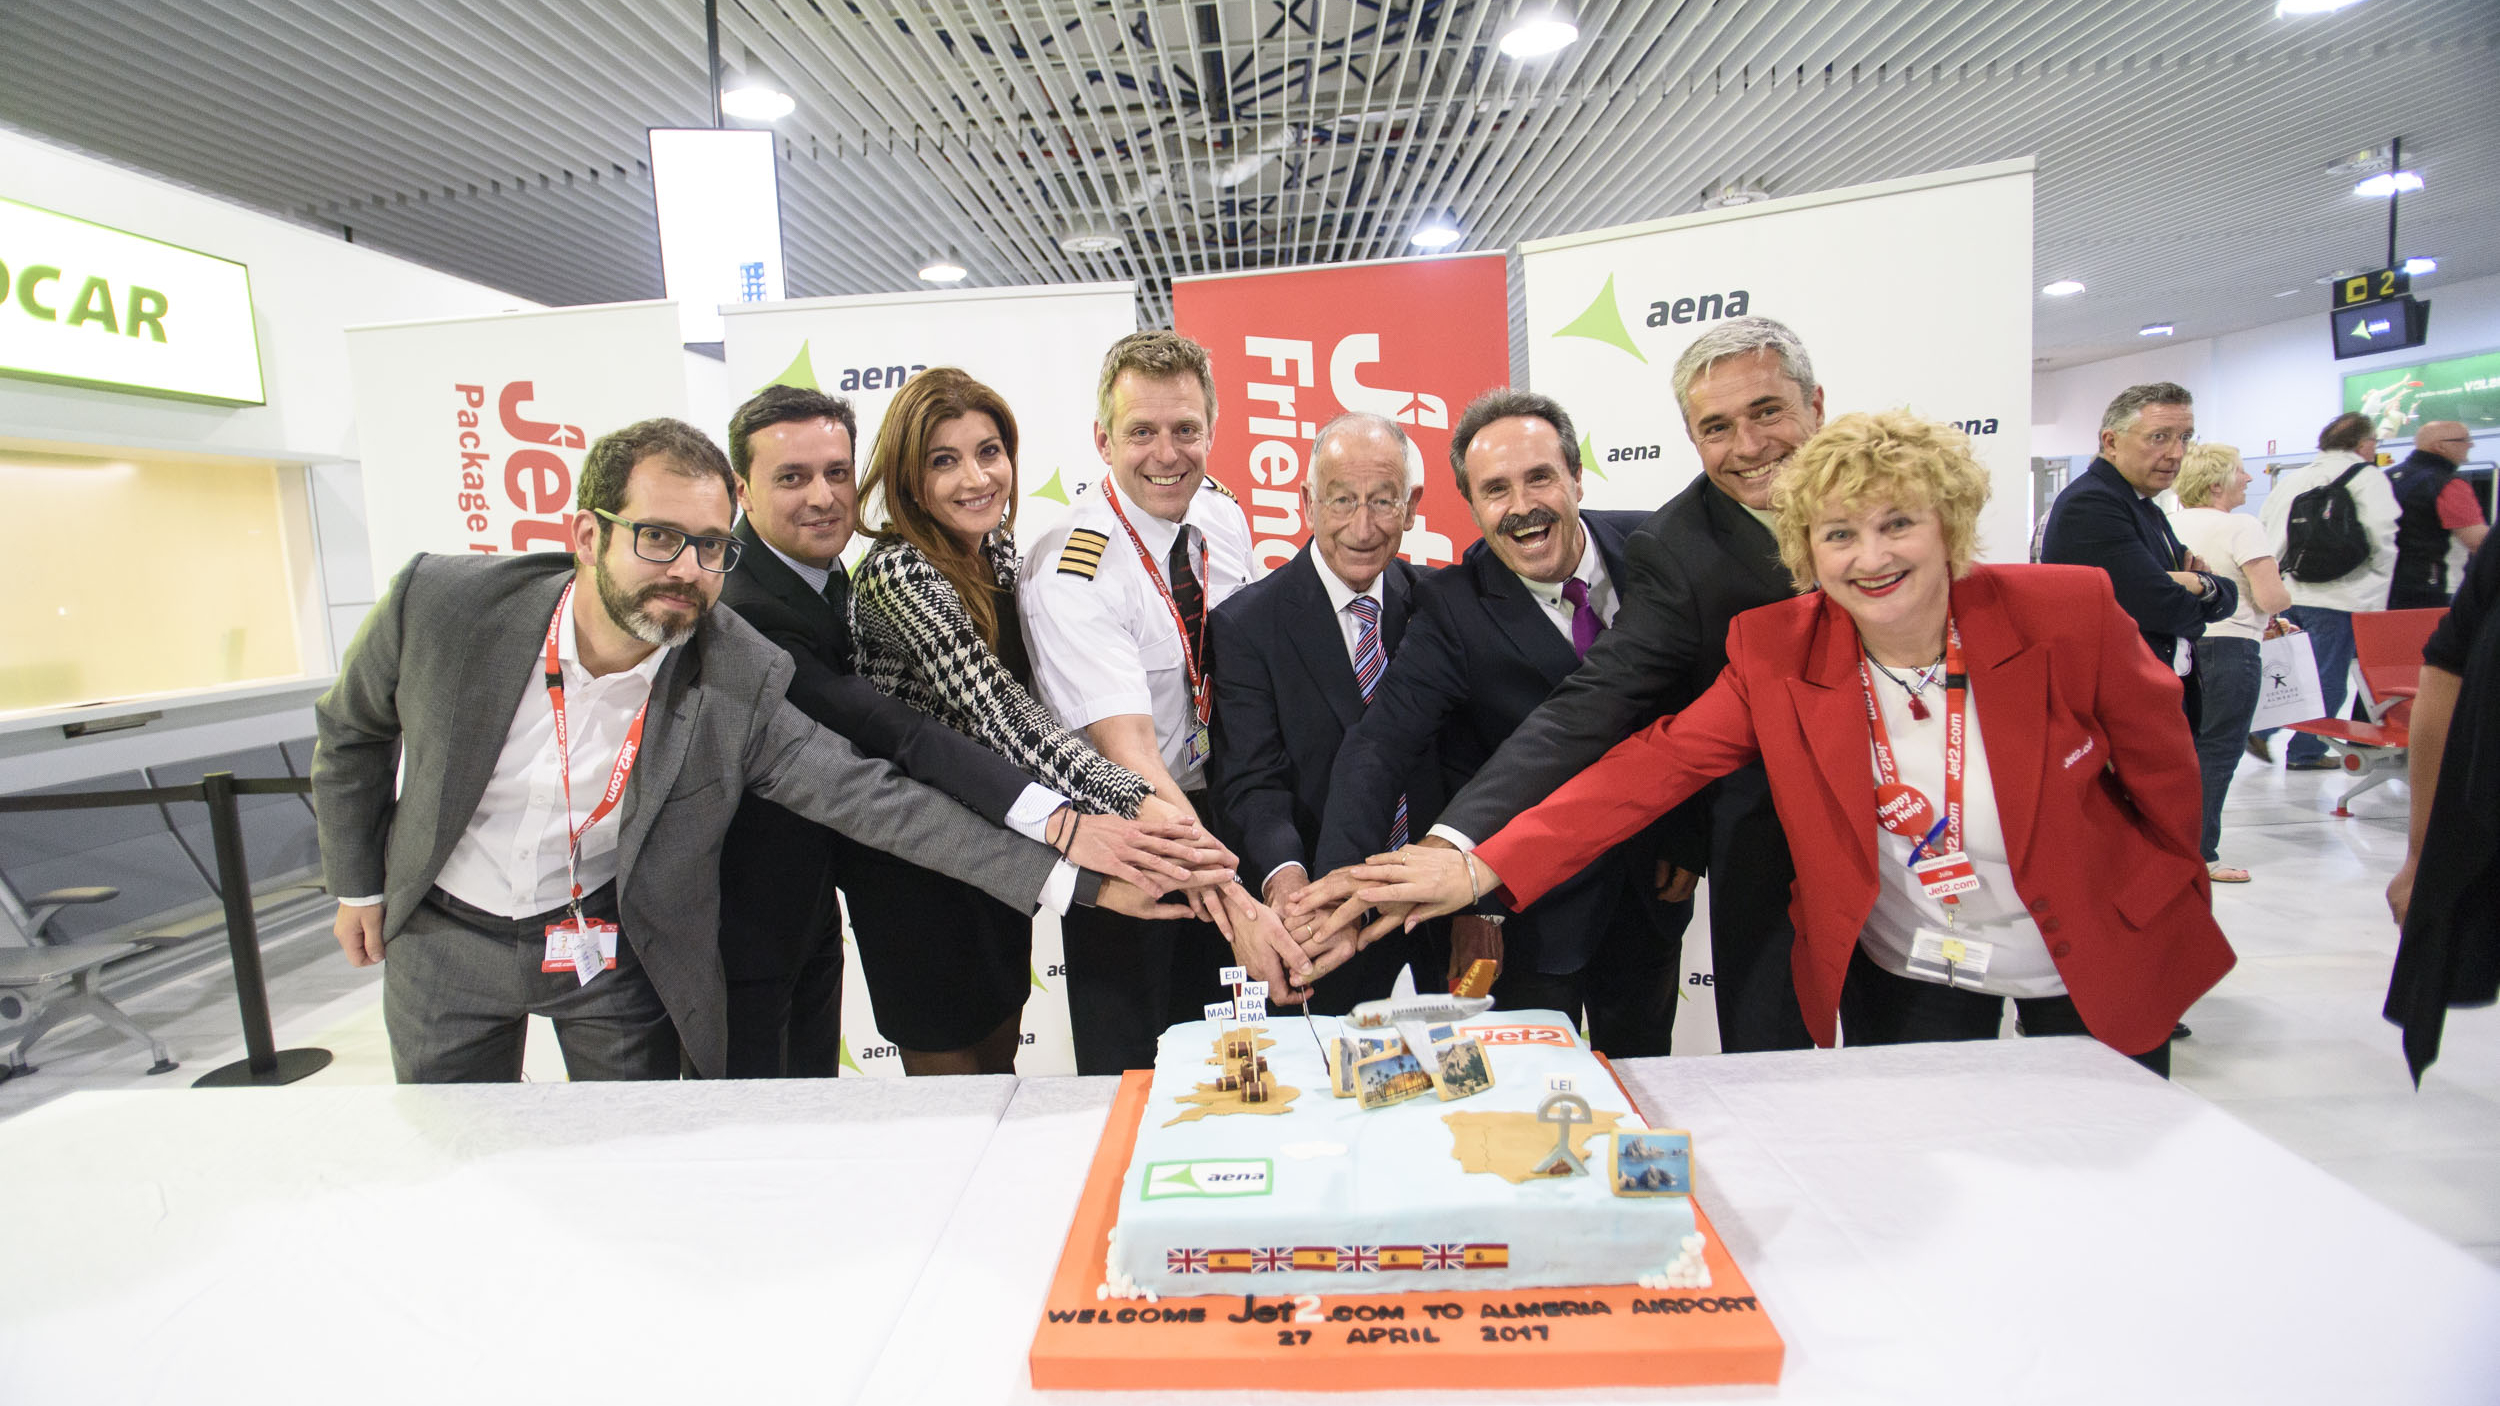 27 4 2017 Carolina Lafita recibe a los pasajeros nueva ruta cono Edimburgo de Jet2.com 2 uai - Turismo Almería